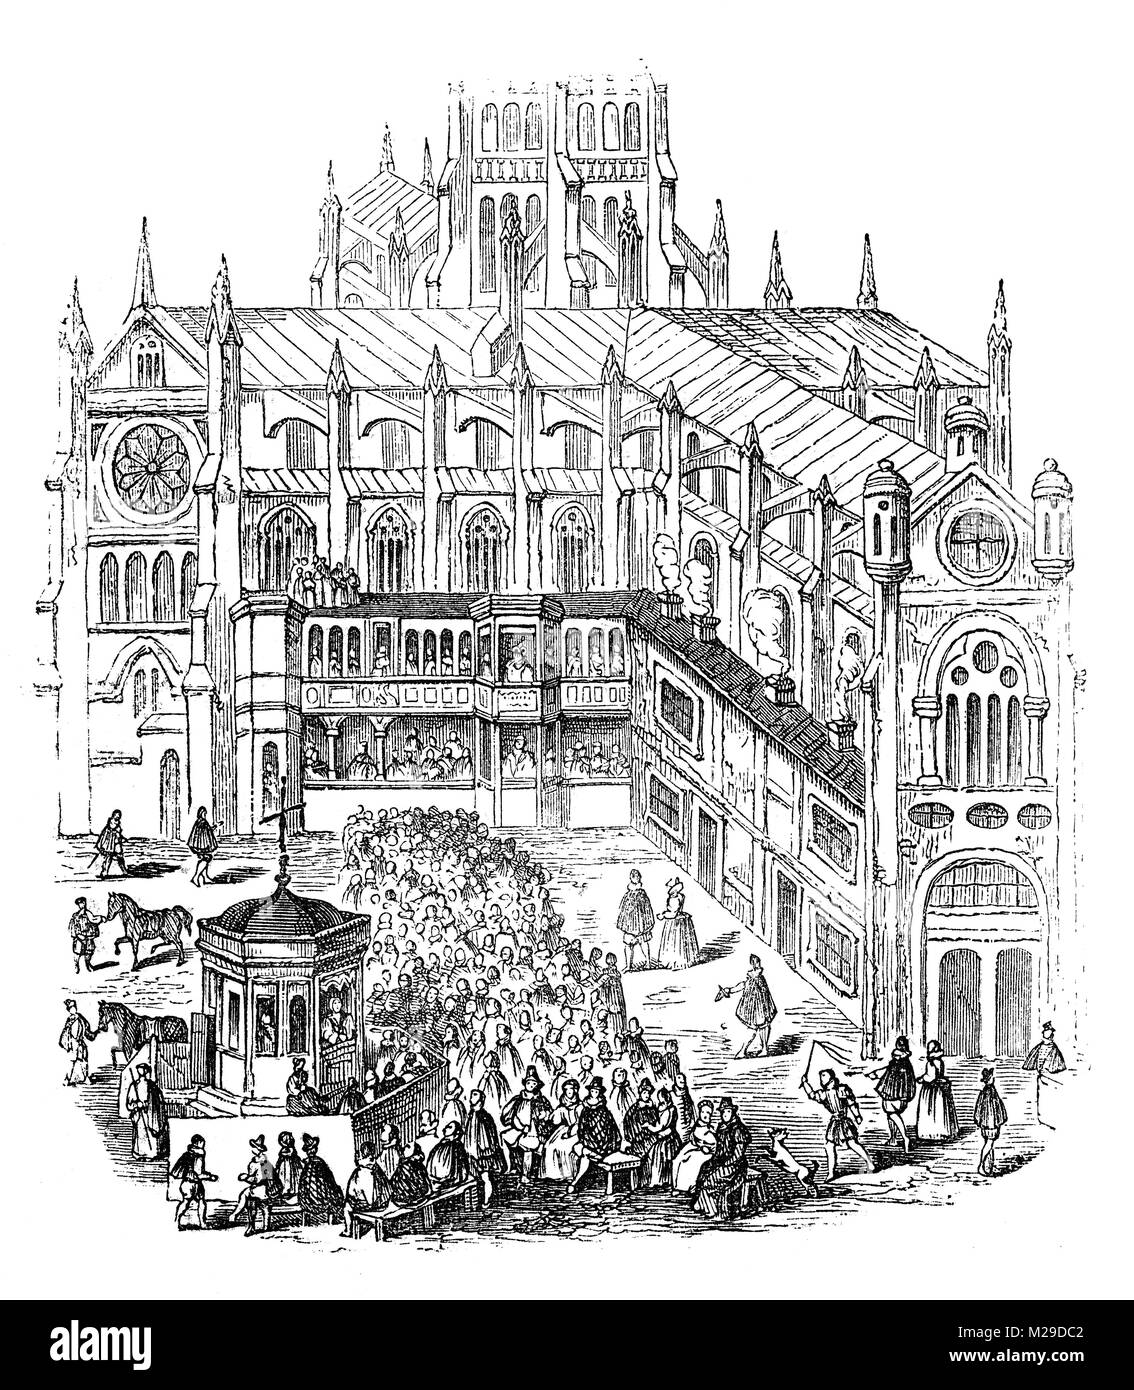 St Paul's Cross était une prédication croix et chaire en plein air dans le parc du Vieux St Paul's Cathedral, Londres, Angleterre. C'était la plus importante chaire de Tudor et Stuart précoce de l'Angleterre, et beaucoup des déclarations les plus importantes sur le plan politique et religieux, les changements apportés par la réforme, ont été rendus publics d'ici. Banque D'Images